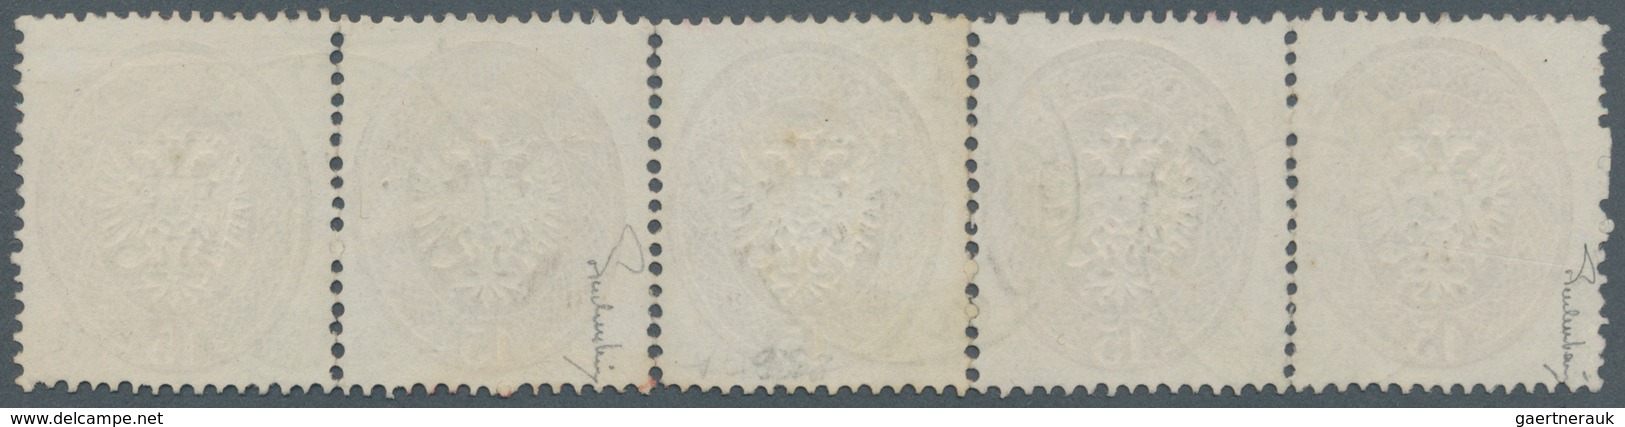 Österreich - Lombardei Und Venetien: 1863, 15 Soldi Braun Im Waager. 5er-Streifen Entwertet Mit 3 Za - Lombardy-Venetia